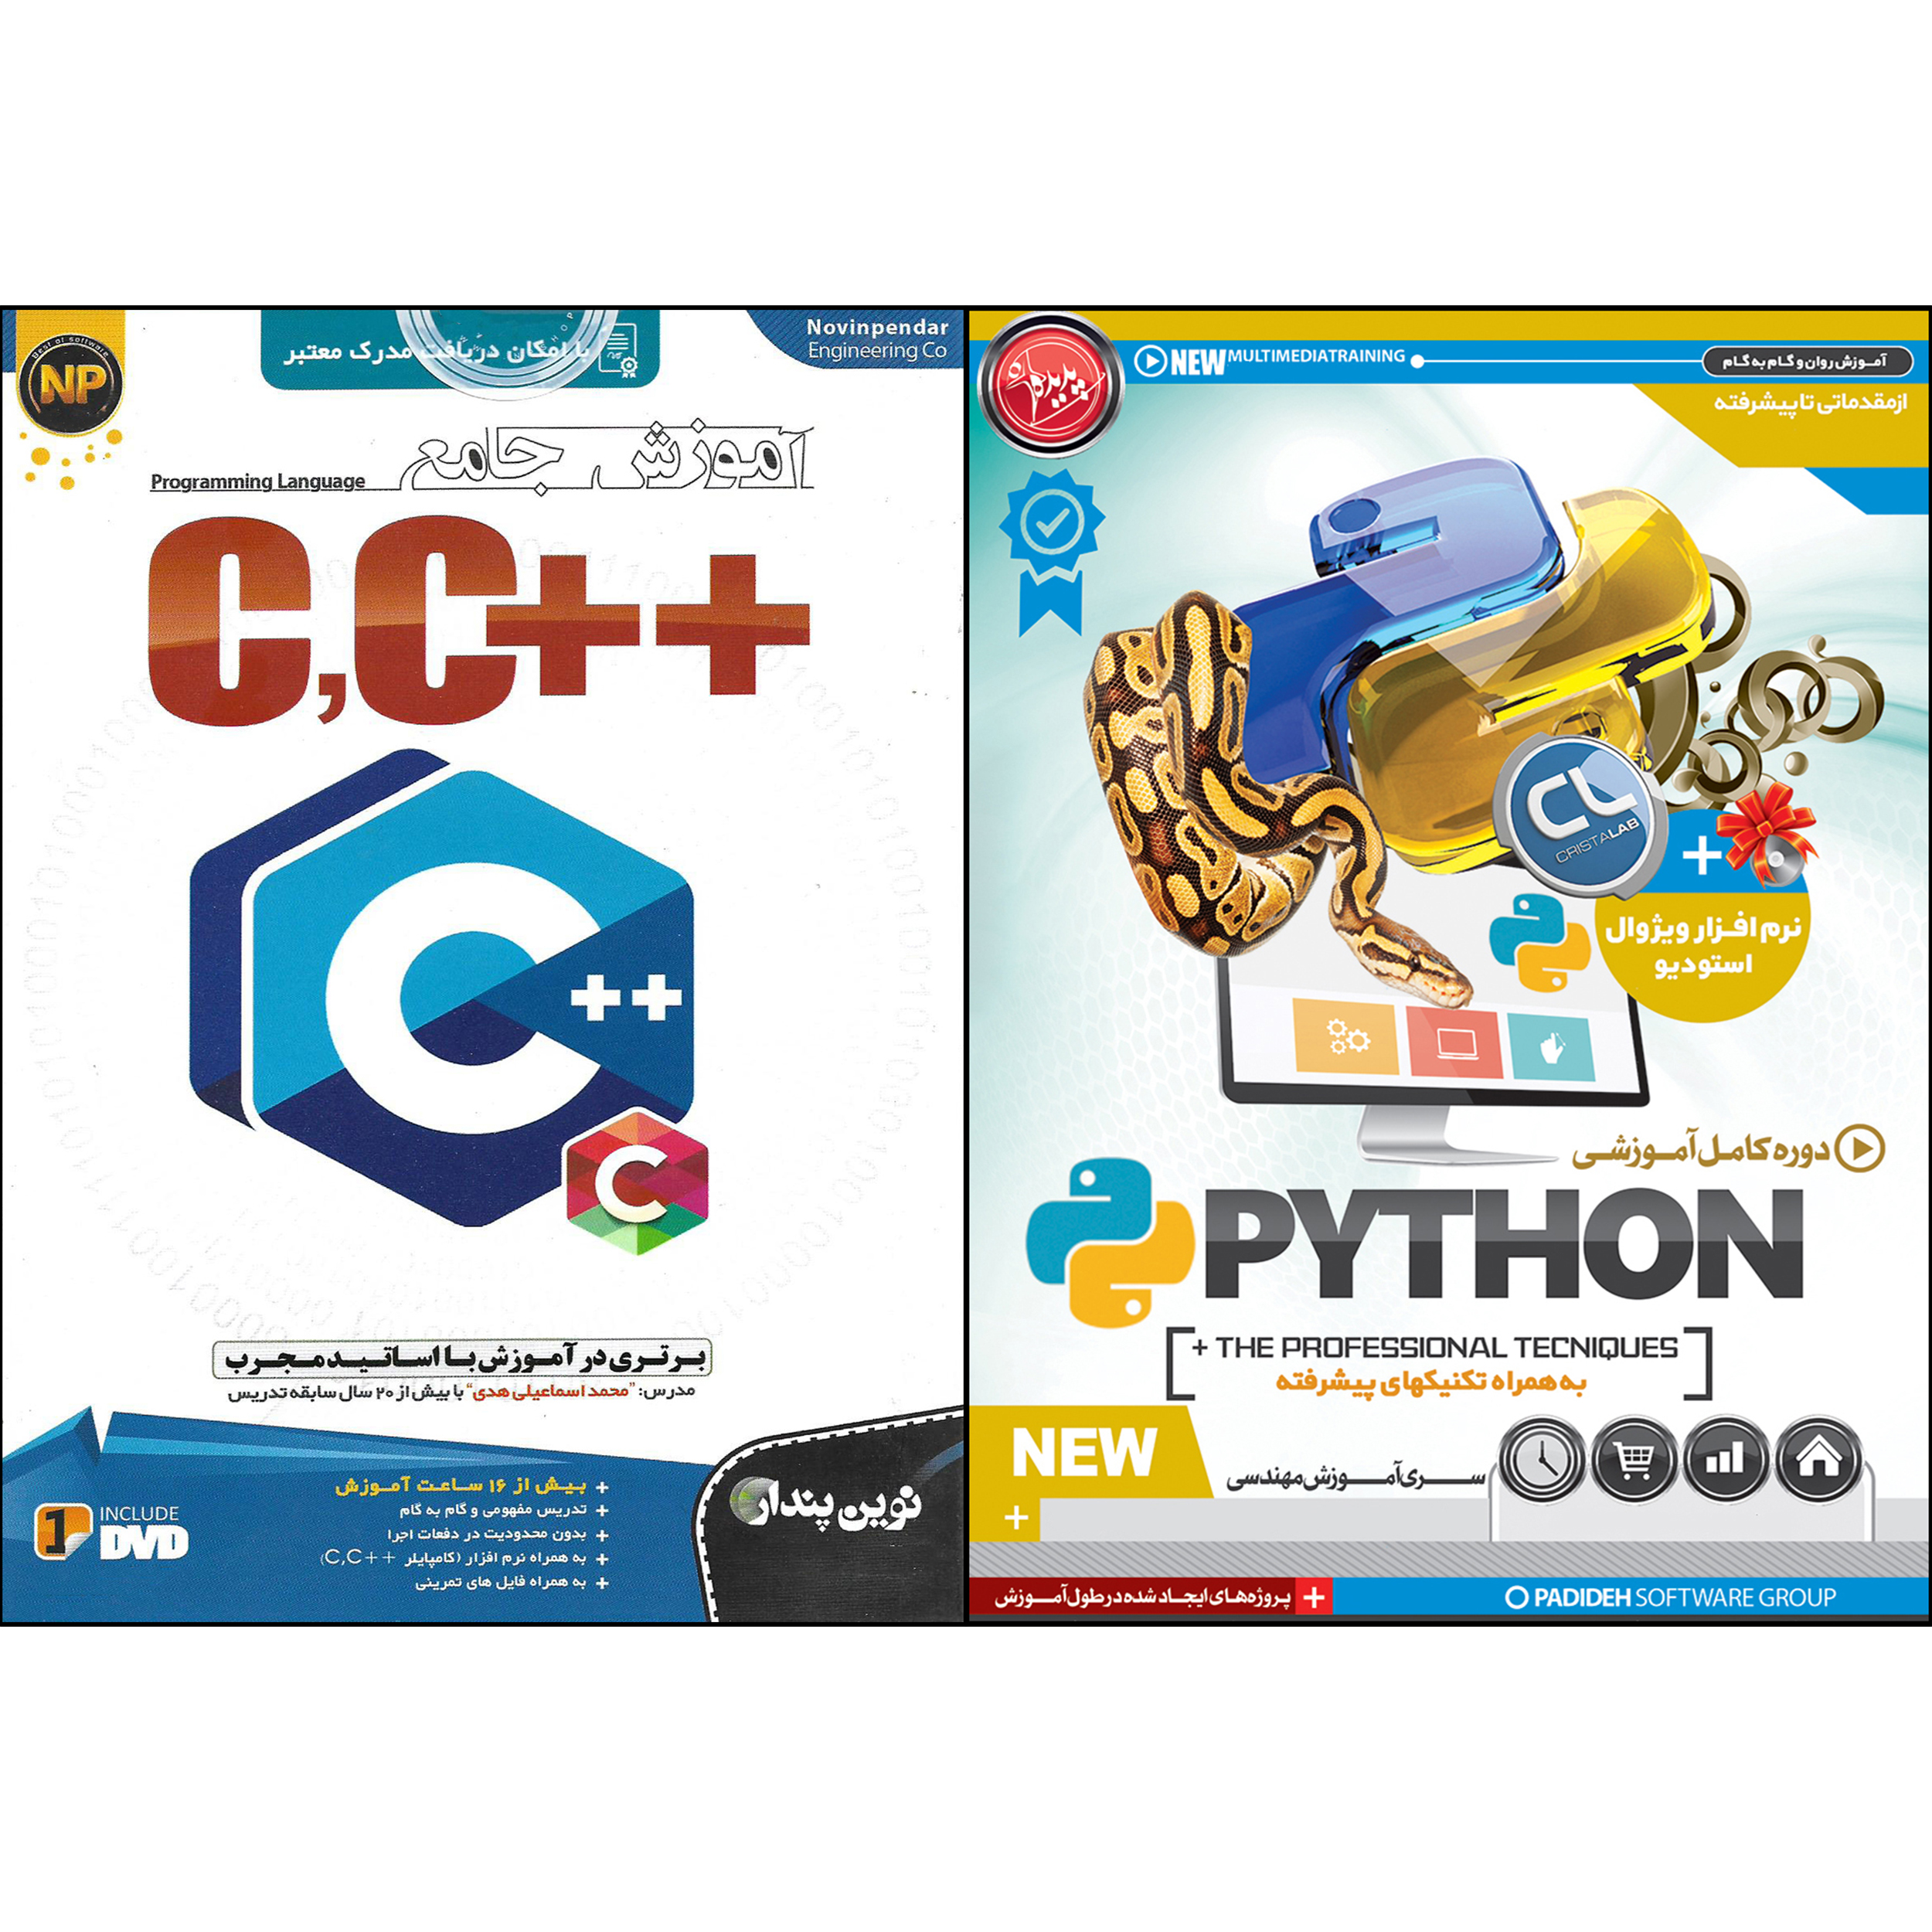 نرم افزار آموزش برنامه نویسی PYTHON نشر پدیده به همراه نرم افزار آموزش جامع ++C,C نشر نوین پندار